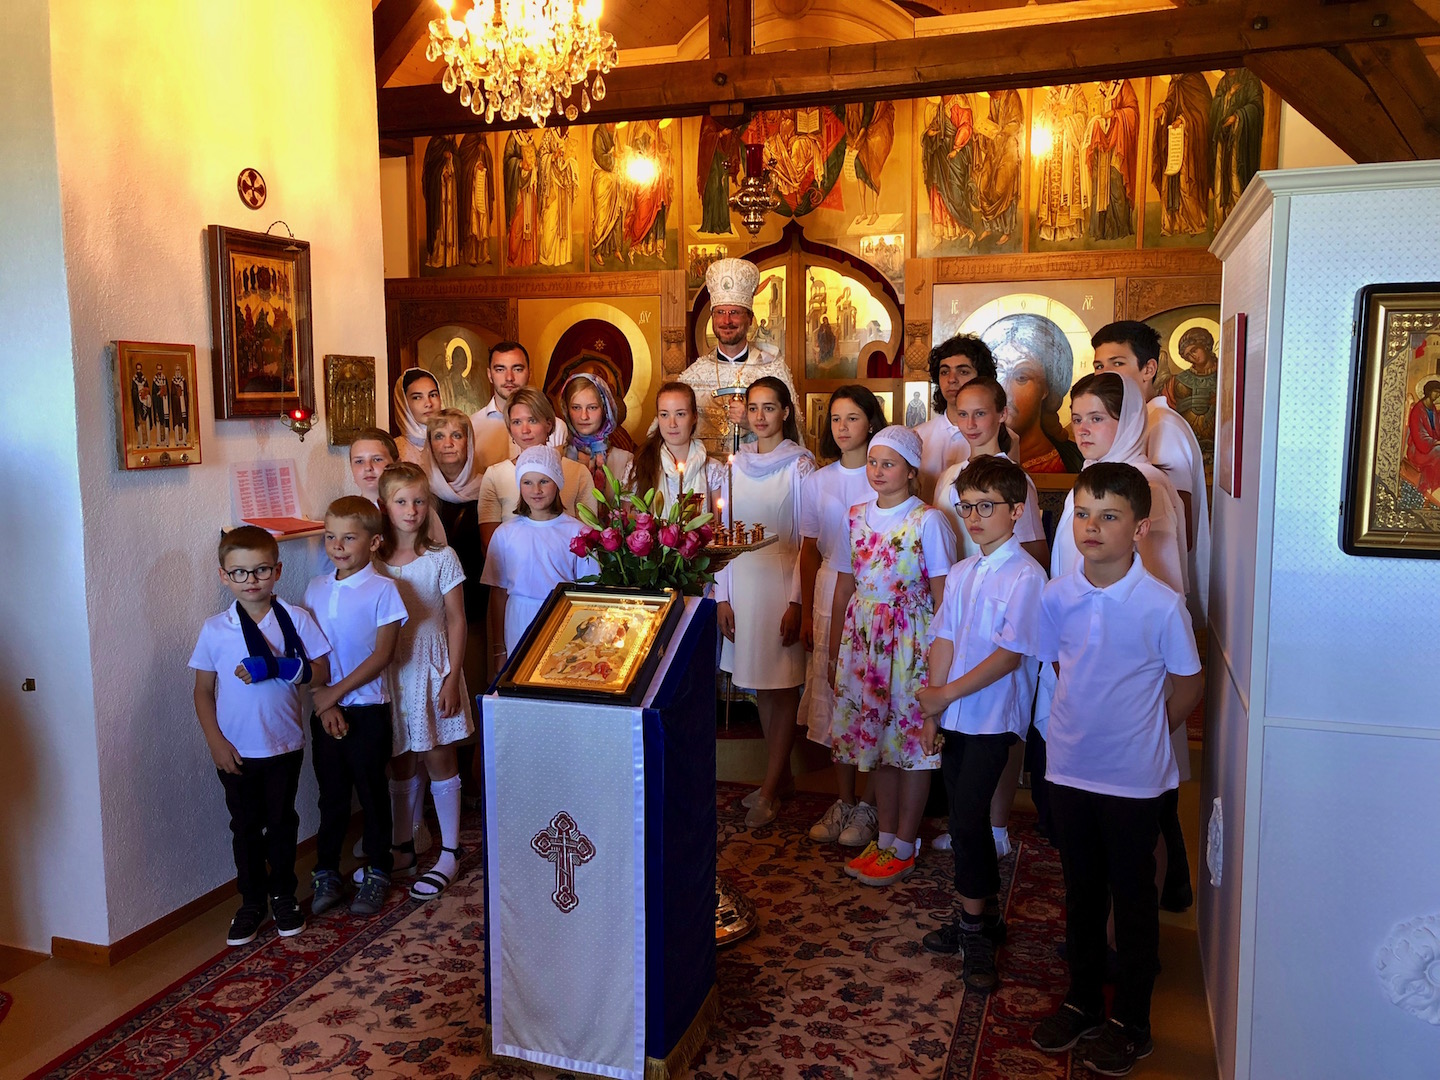 Suisse : fête de la Transfiguration au monastère de Dompierre